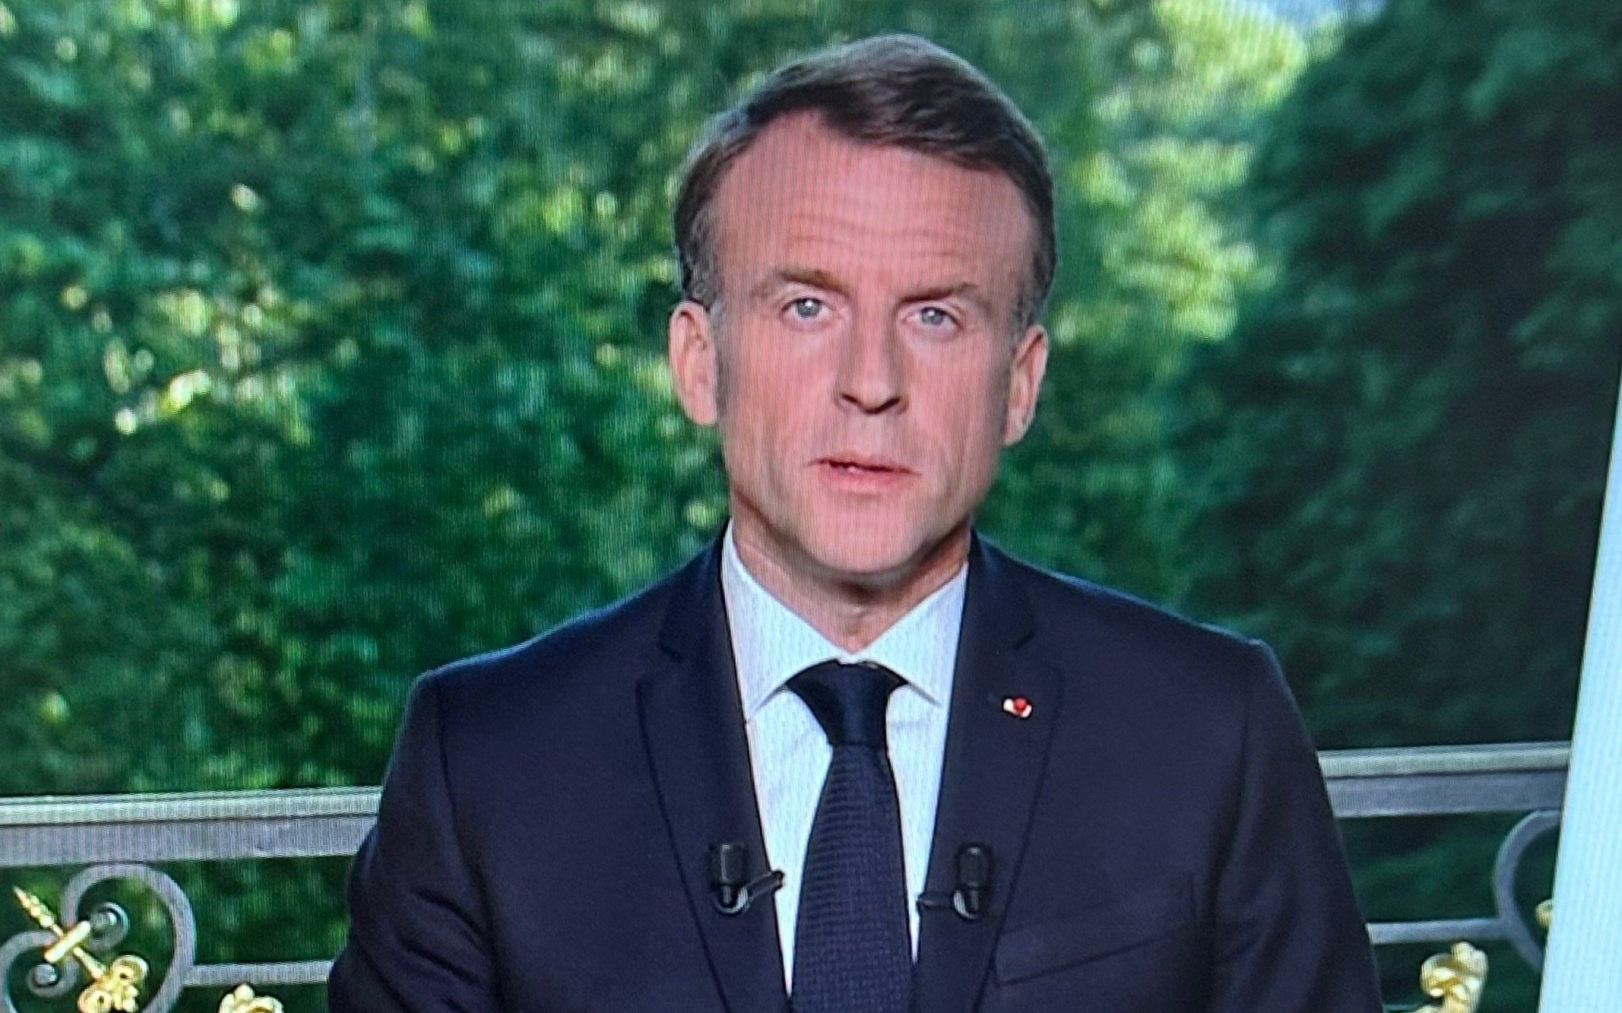 Le Président de la République Emmanuel Macron annonce la dissolution de l’assemblée nationale après les résultats des élections européennes. LP/ Aurélie Audureau